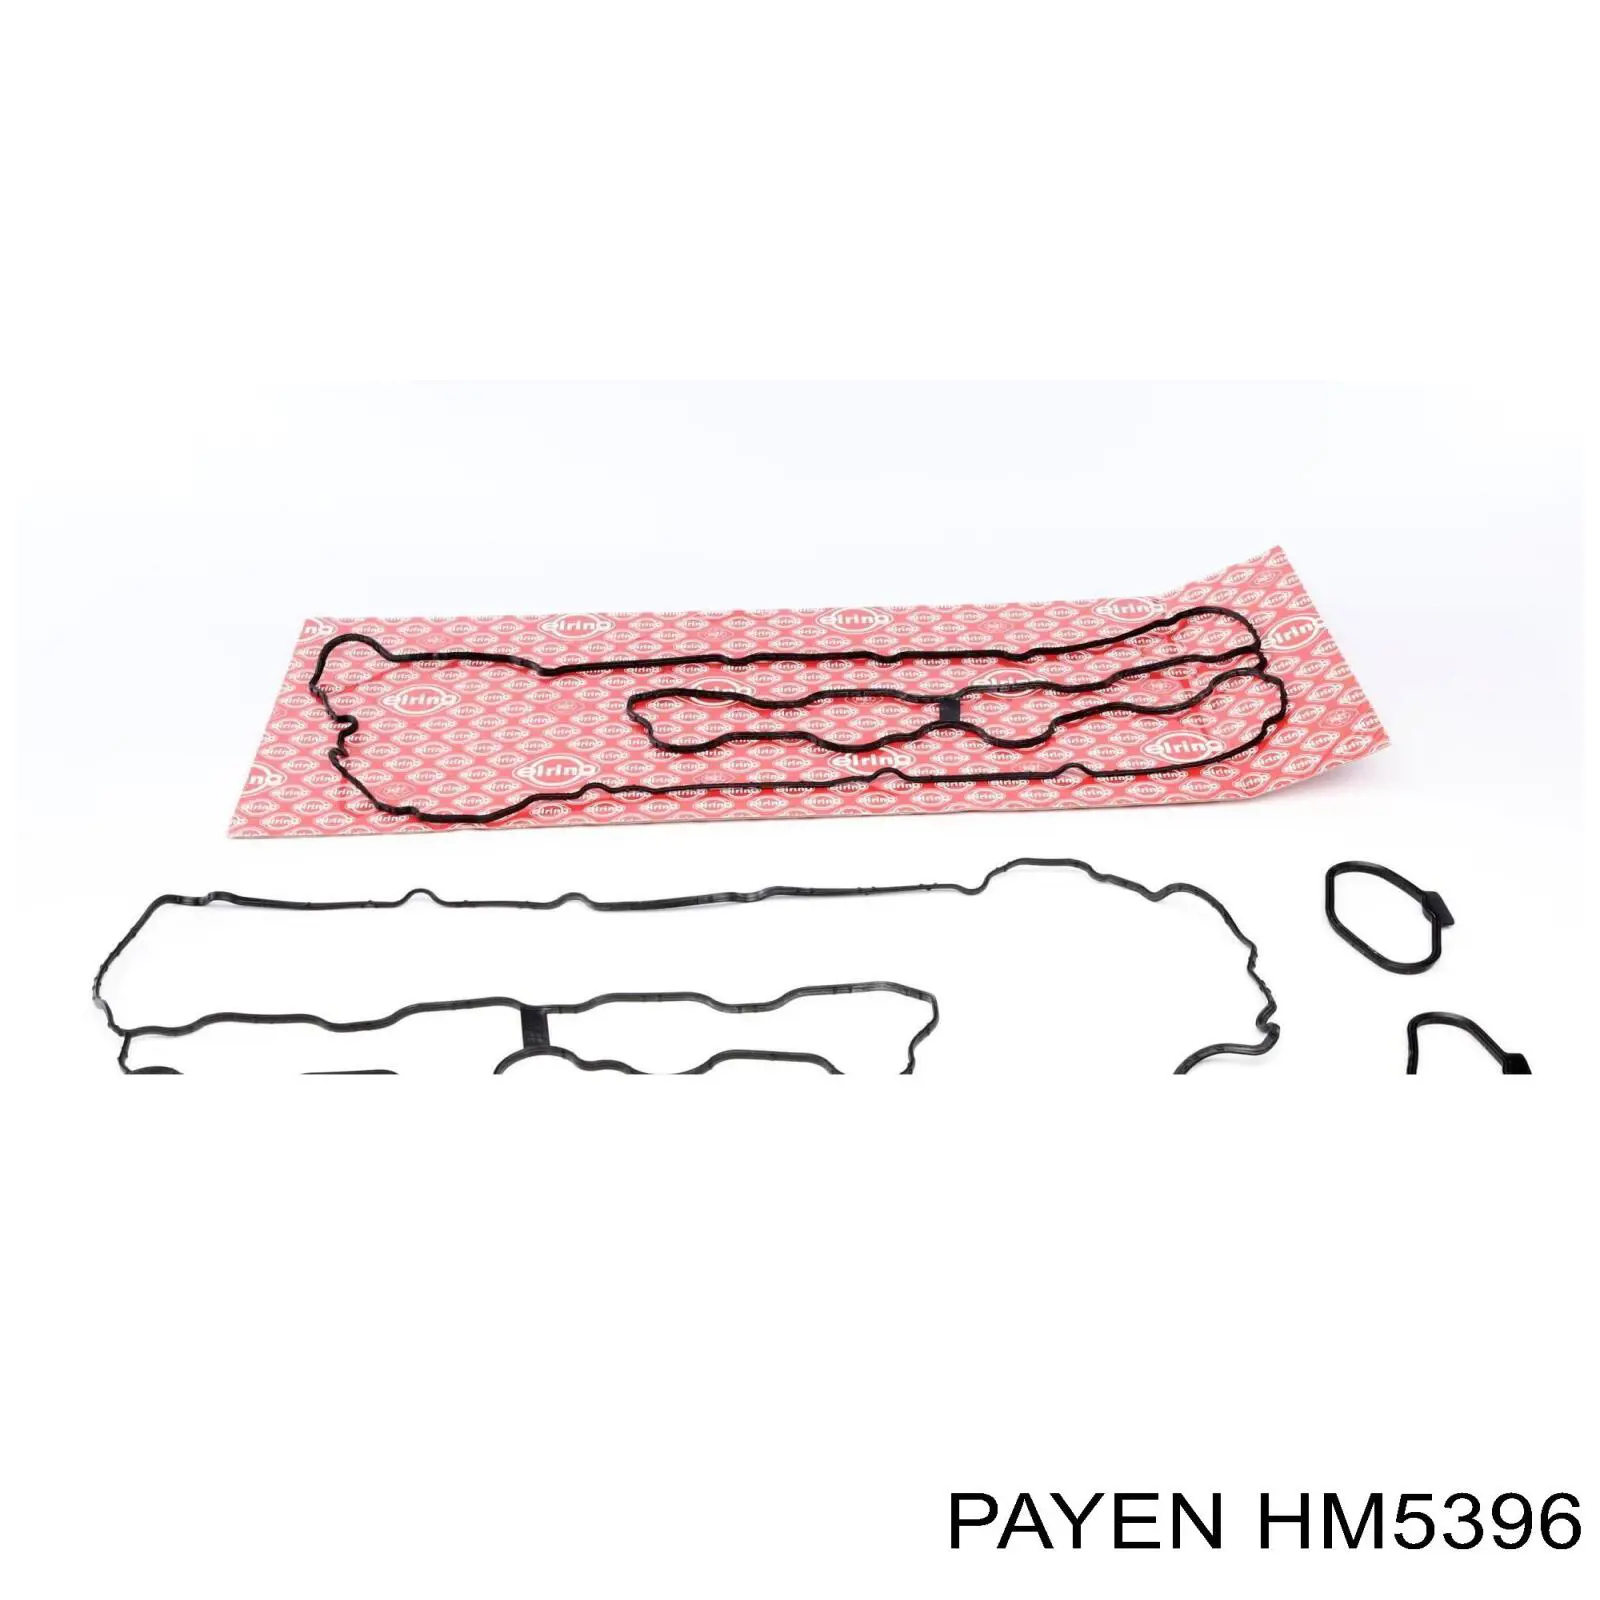 HM5396 Payen juego de juntas, tapa de culata de cilindro, anillo de junta